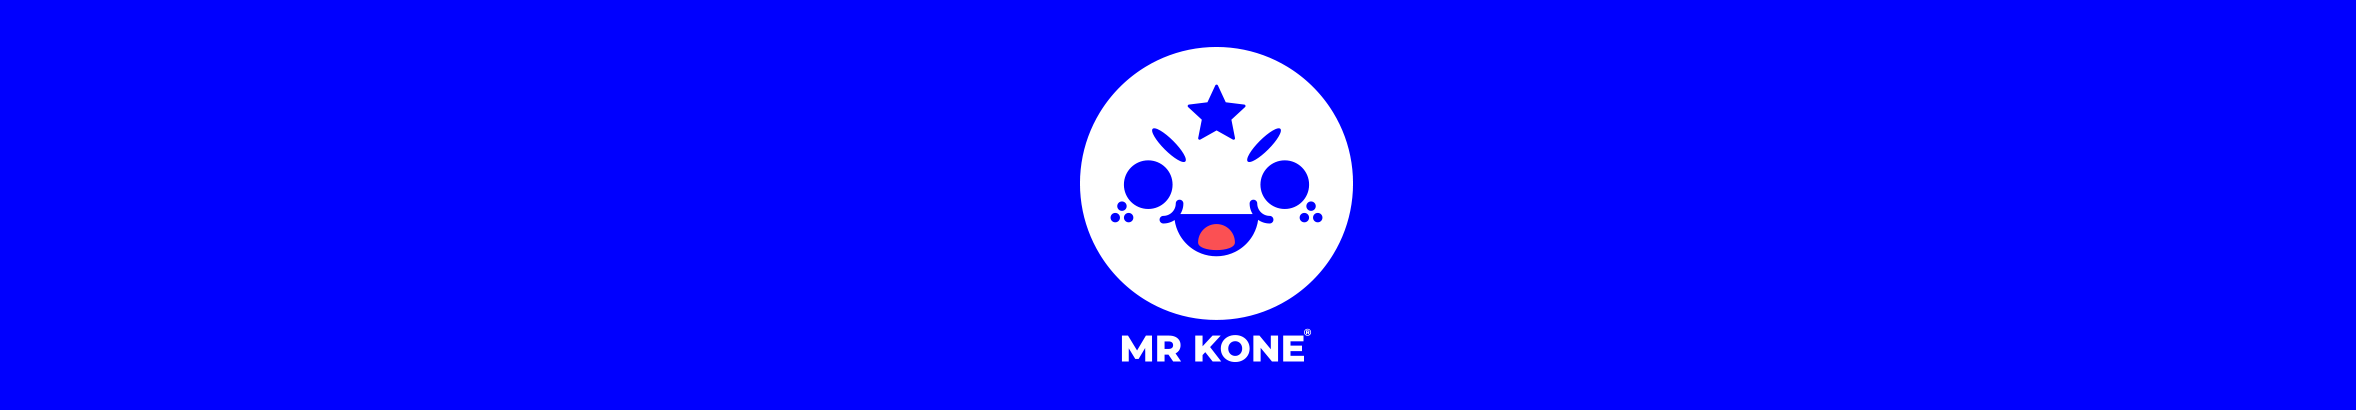 Mr. Kone's profile banner